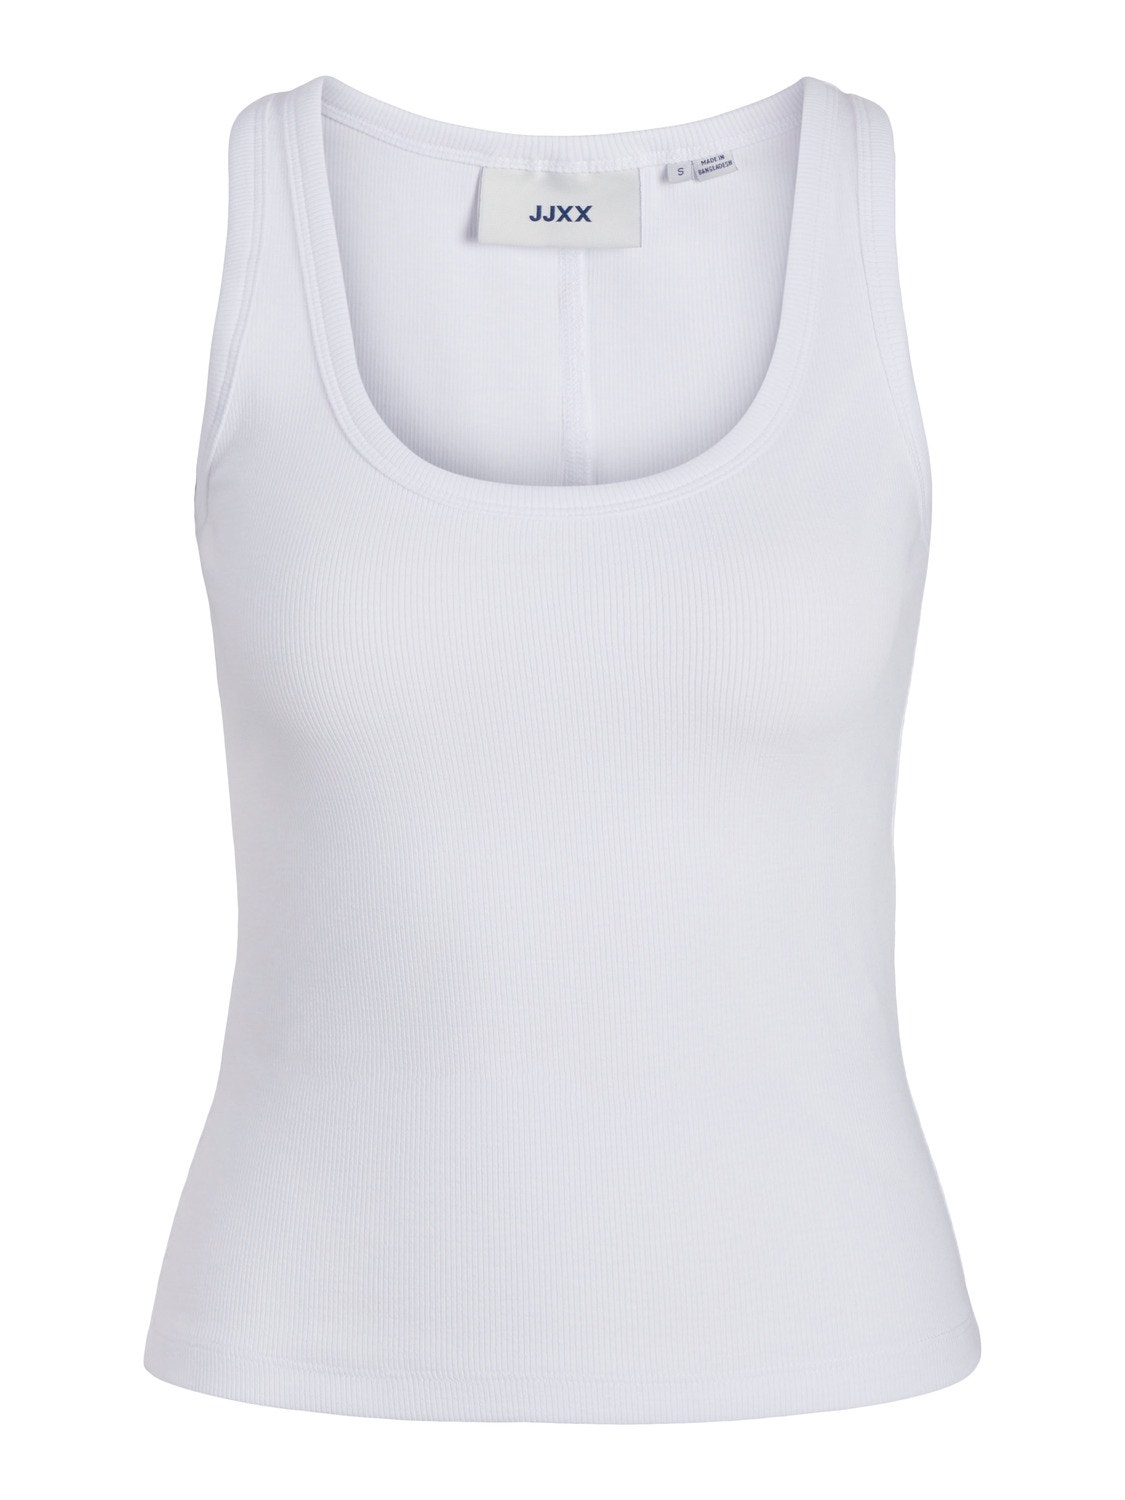 JJXX JXFERA Top -Bright White - 12255294